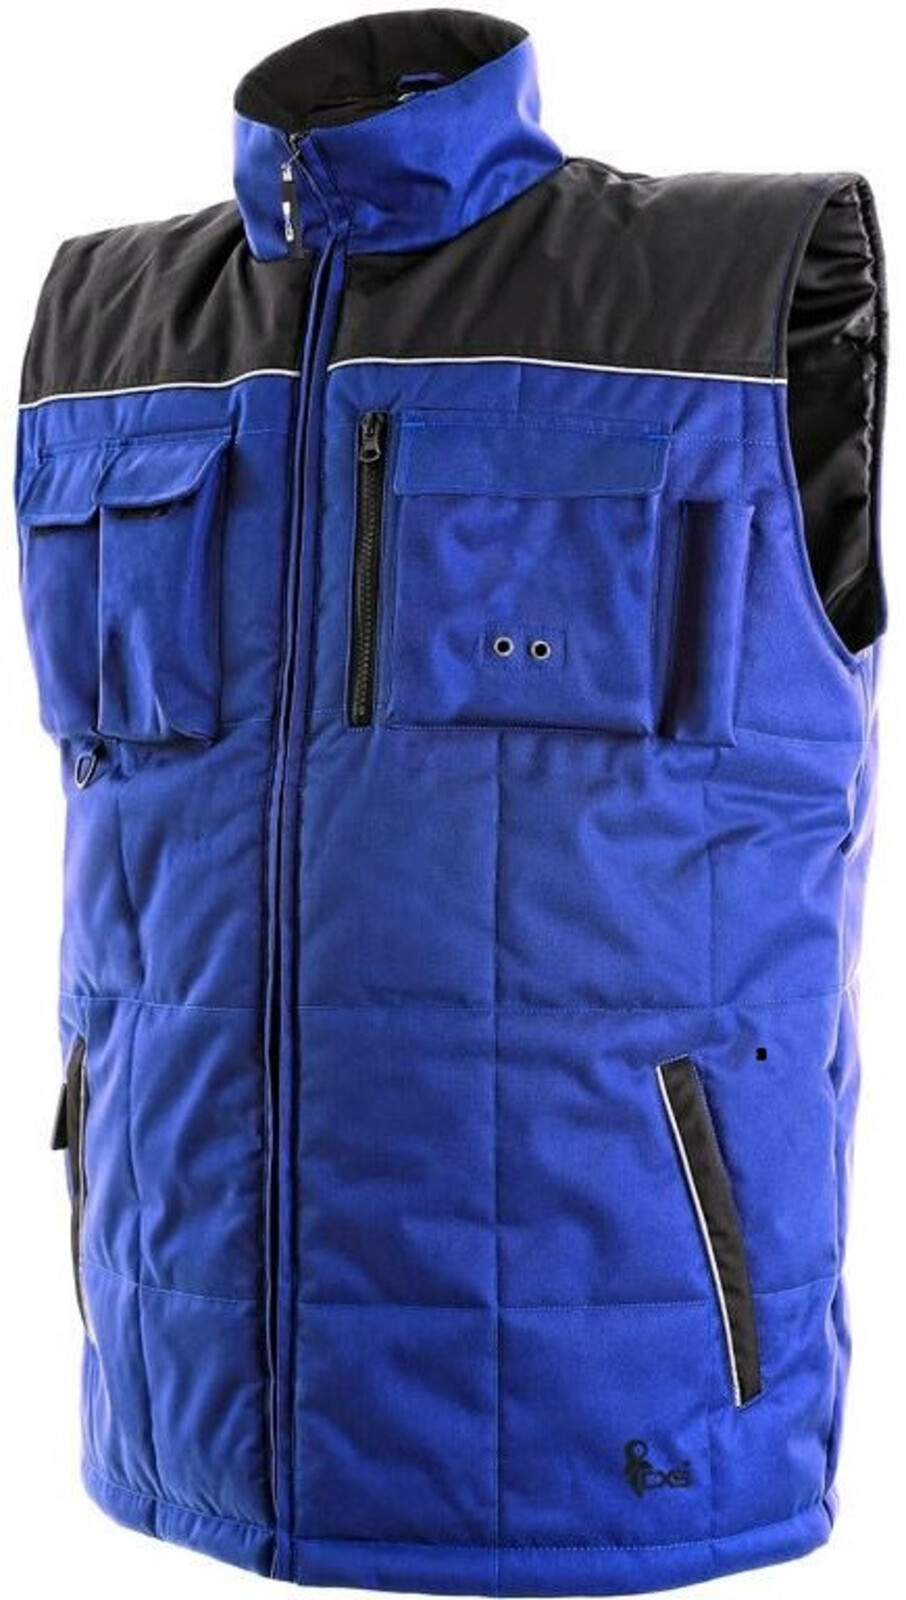 Pánska zateplená zimná vesta CXS Seattle - veľkosť: M, farba: modrá/čierna